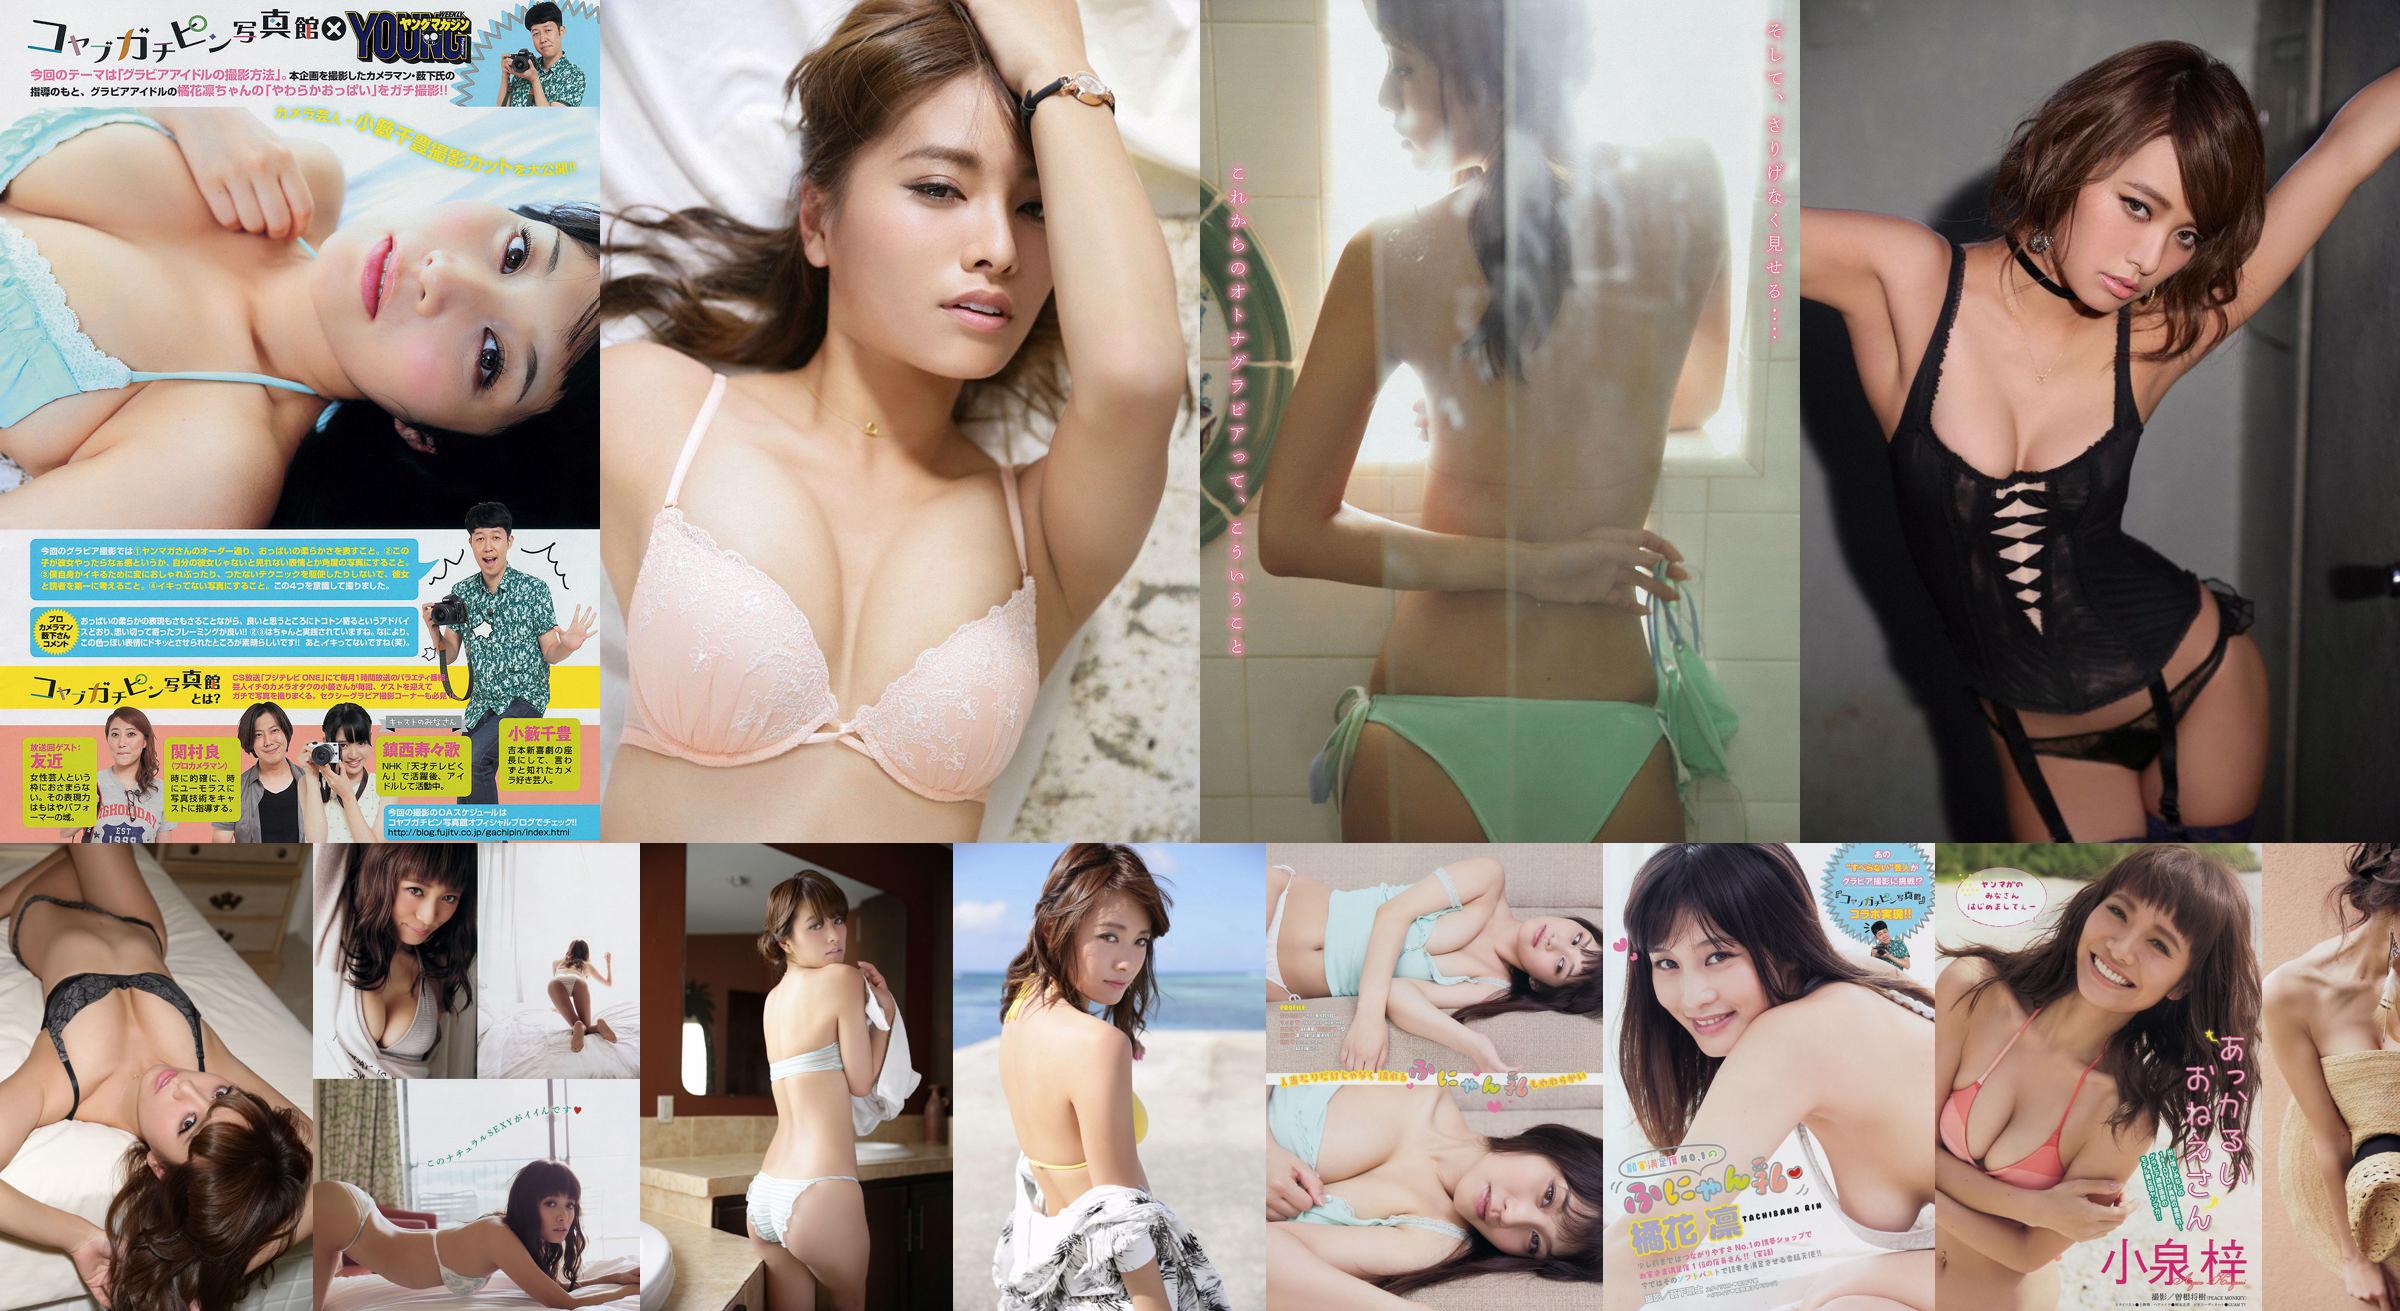 [Young Magazine] Azusa Koizumi Tachibana Rin 2014 No.43 Photo Magazine No.c7bb35 หน้า 2